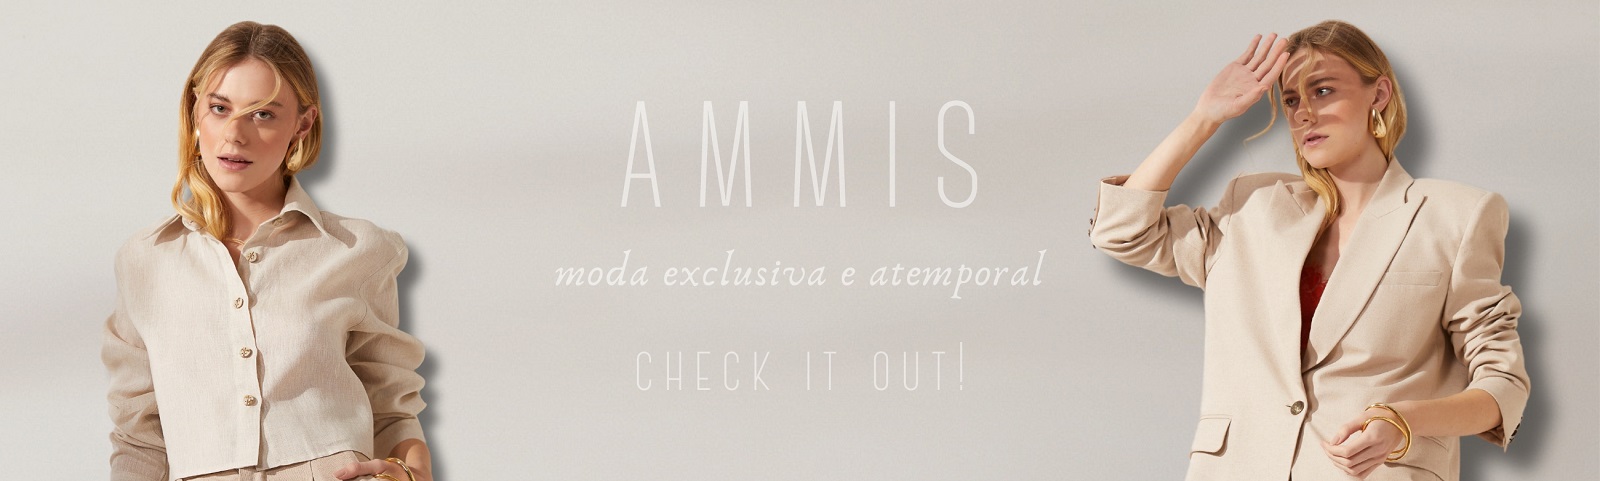 AMMIS: moda exclusiva e atemporal!